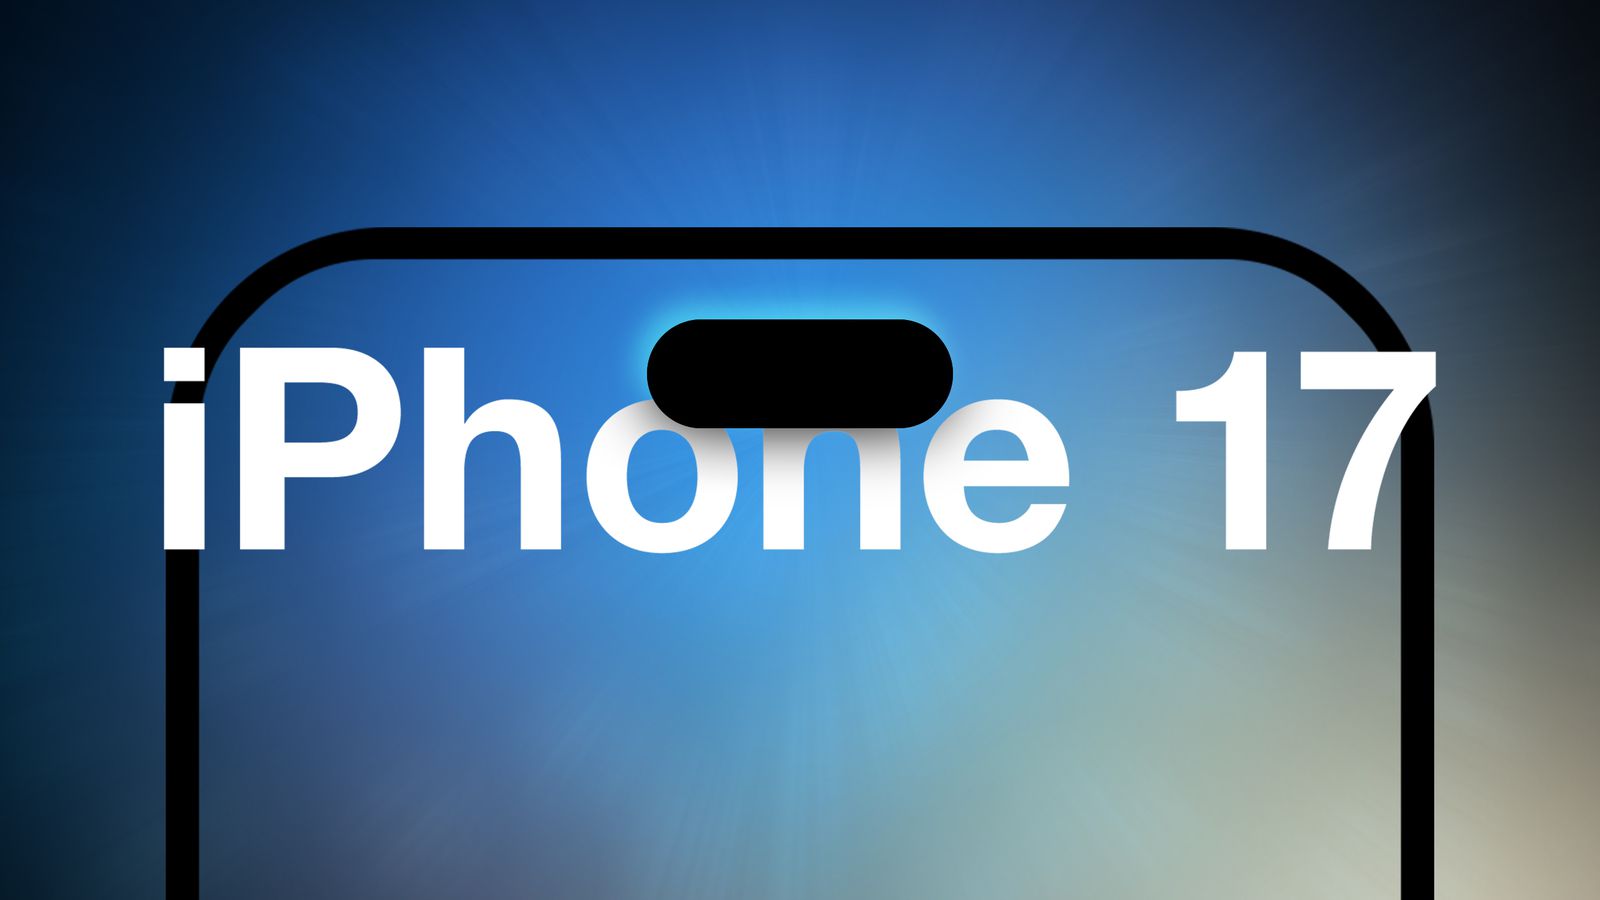 Das neue iPhone 17 wird eine verbesserte 24-Megapixel-Frontkamera erhalten